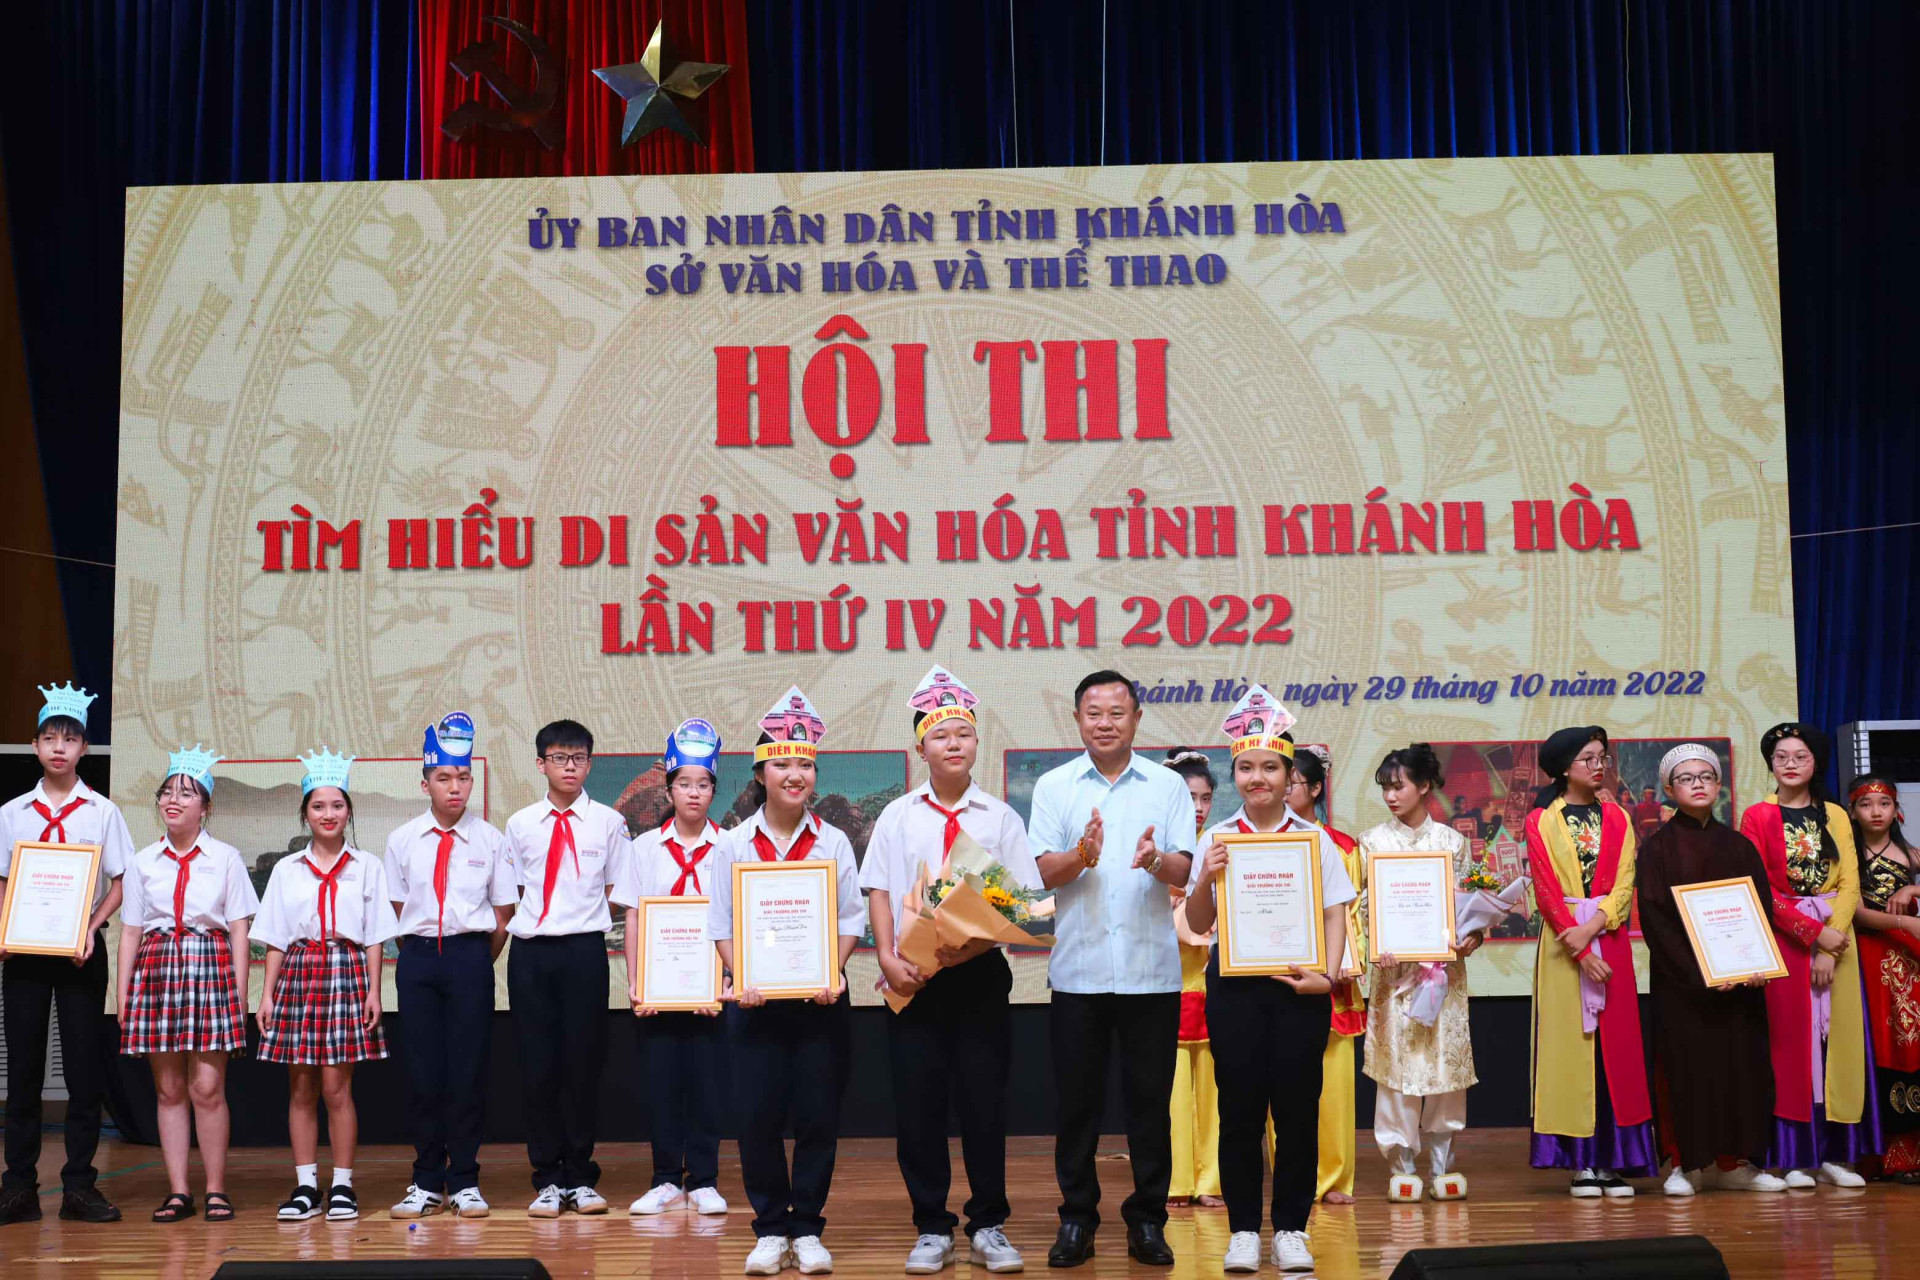 Lãnh đạo Sở Văn hóa và Thể thao trao giải Nhất cho đội thi đến từ huyện Diên Khánh. 